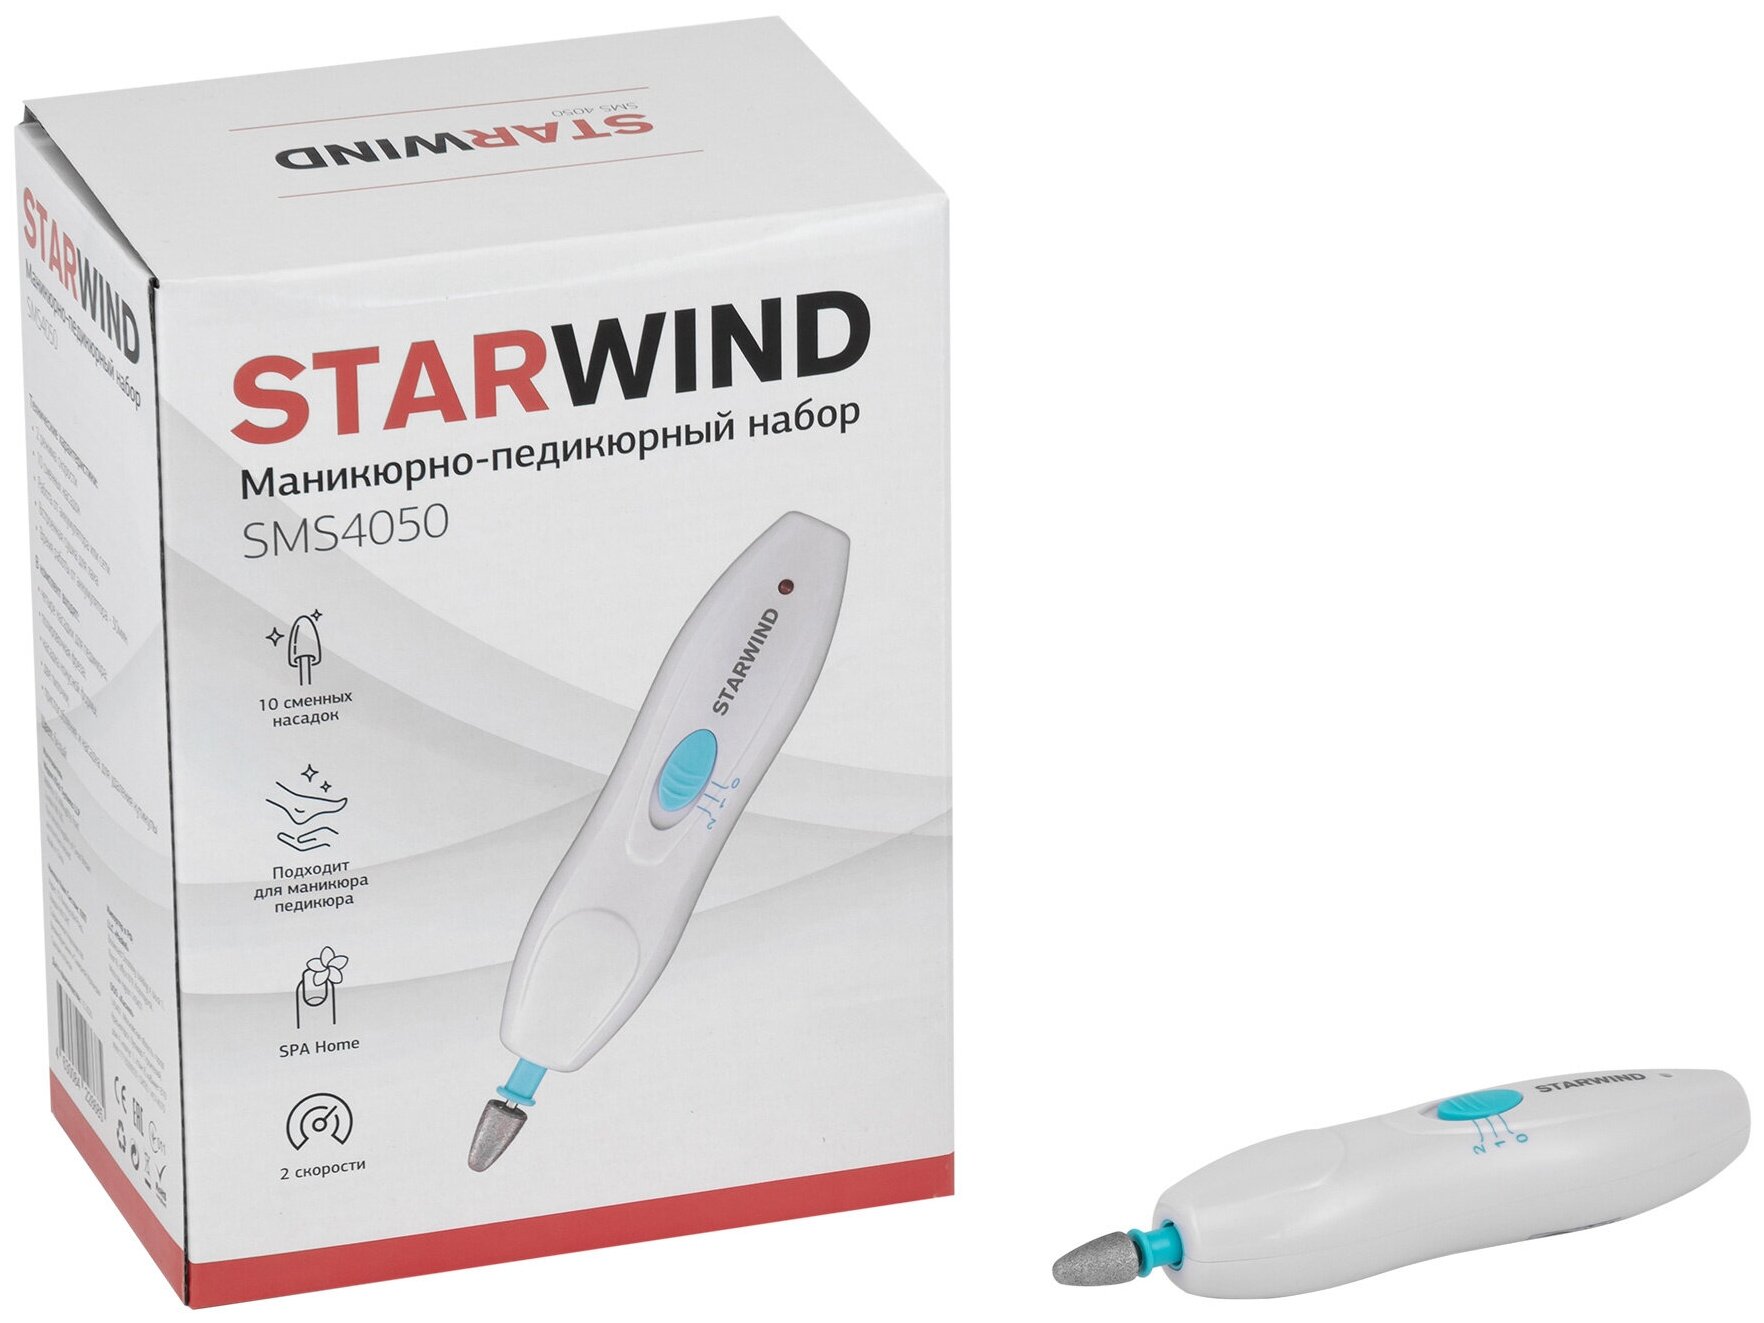 Маникюрно-педикюрный набор Starwind SMS 4050 насадок в компл.10шт белыйсиний